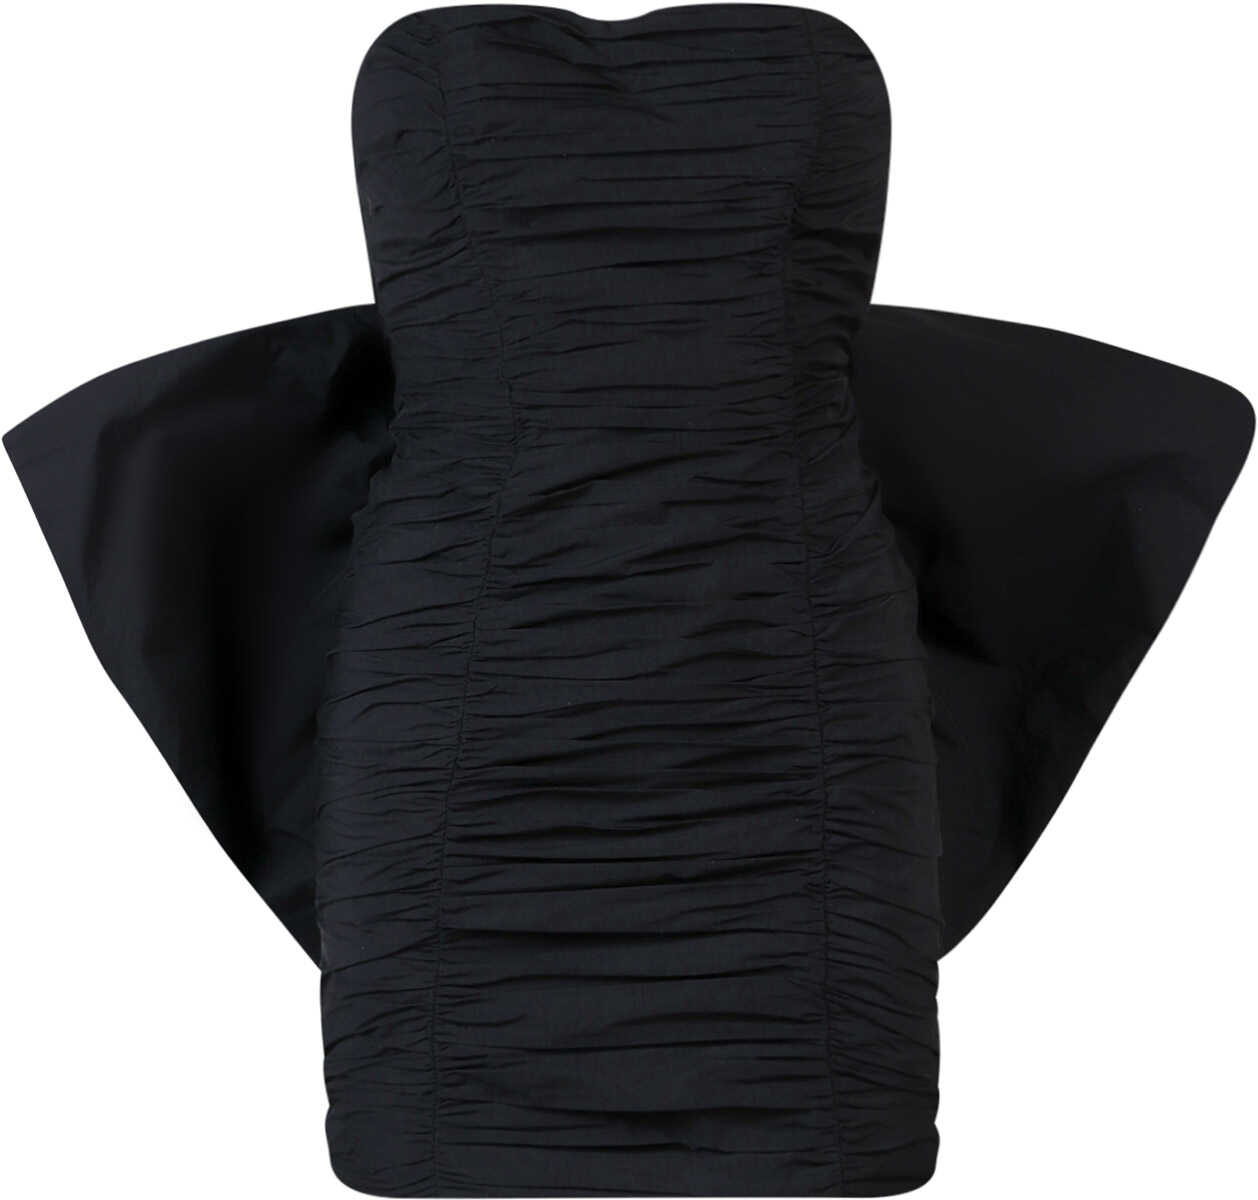 ROTATE Birger Christensen Dress Black